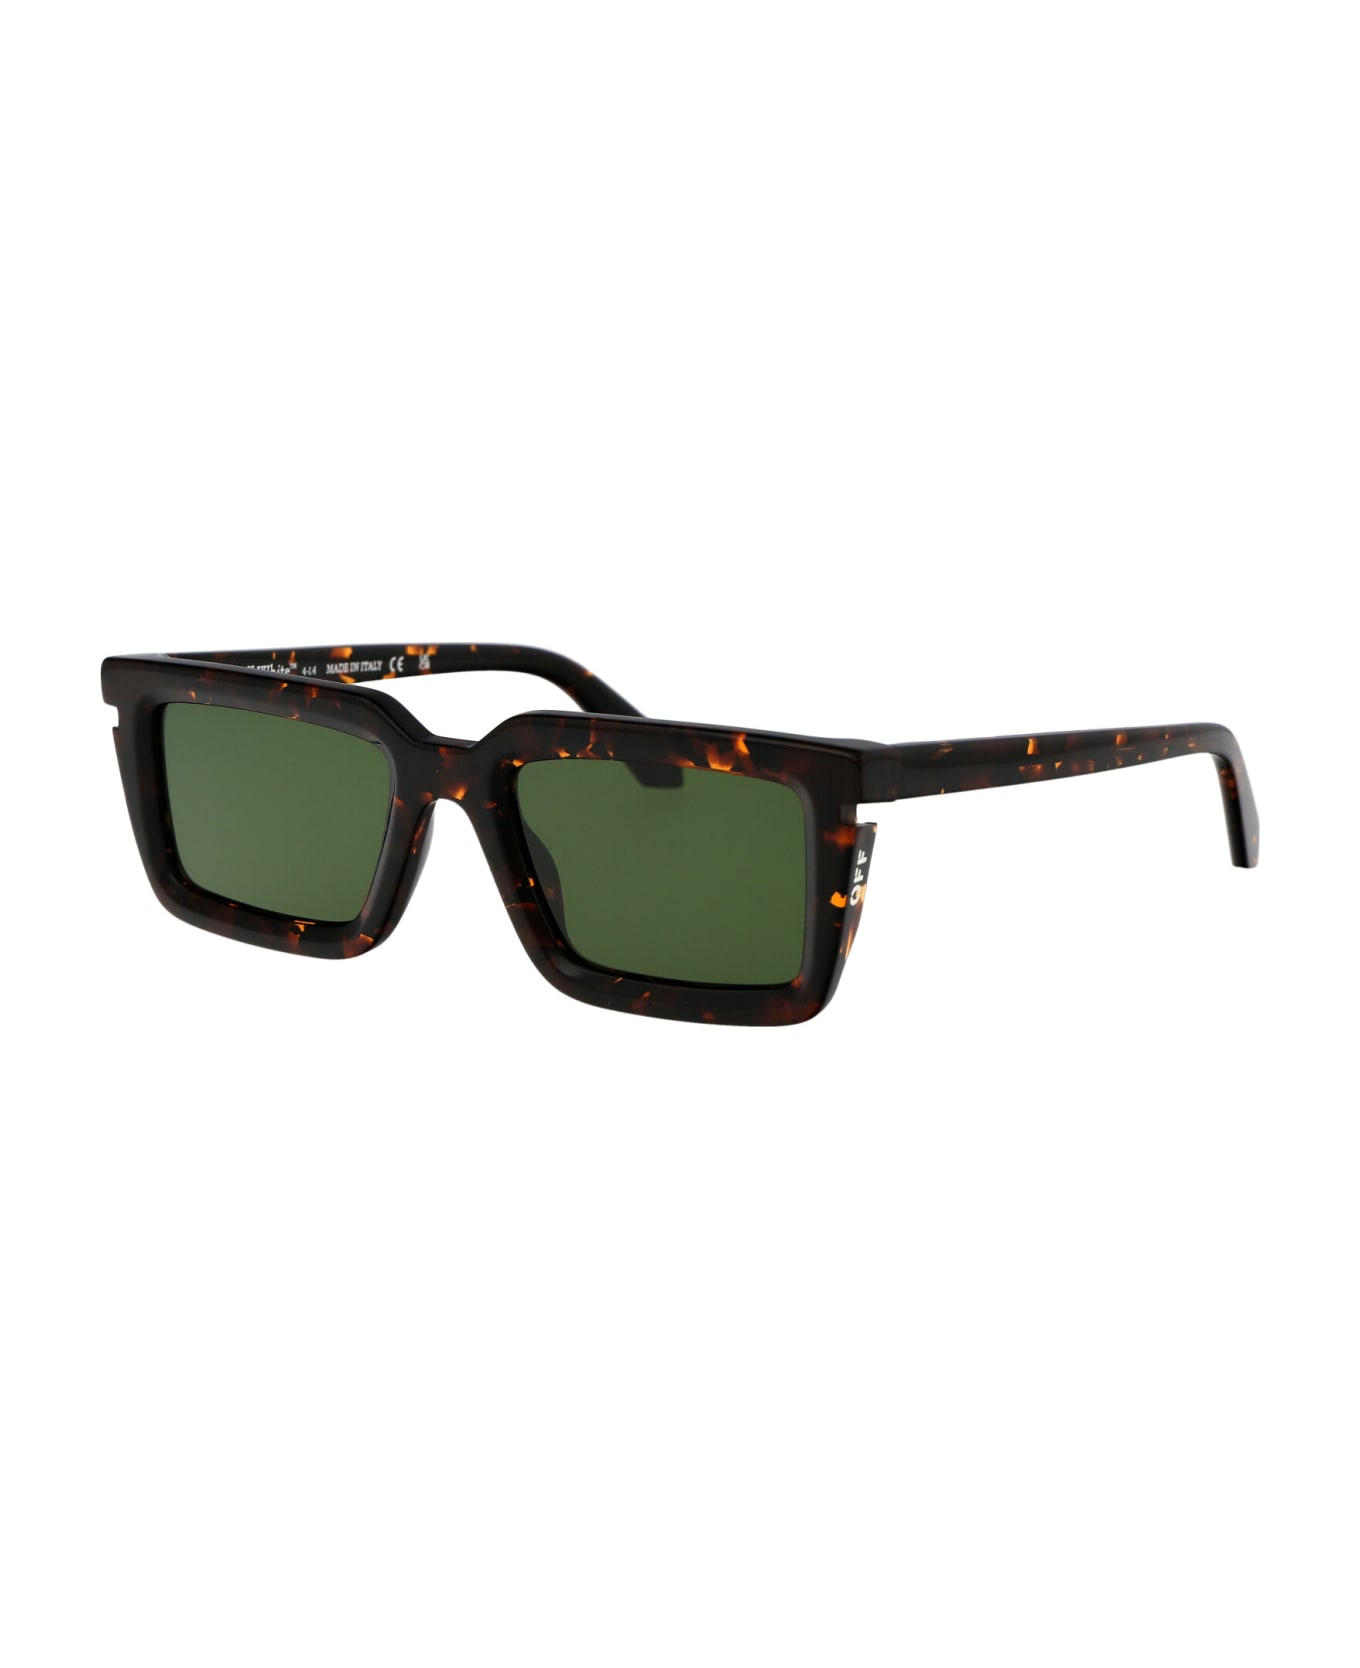 Off-White Tucson Sunglasses - 6055 HAVANA